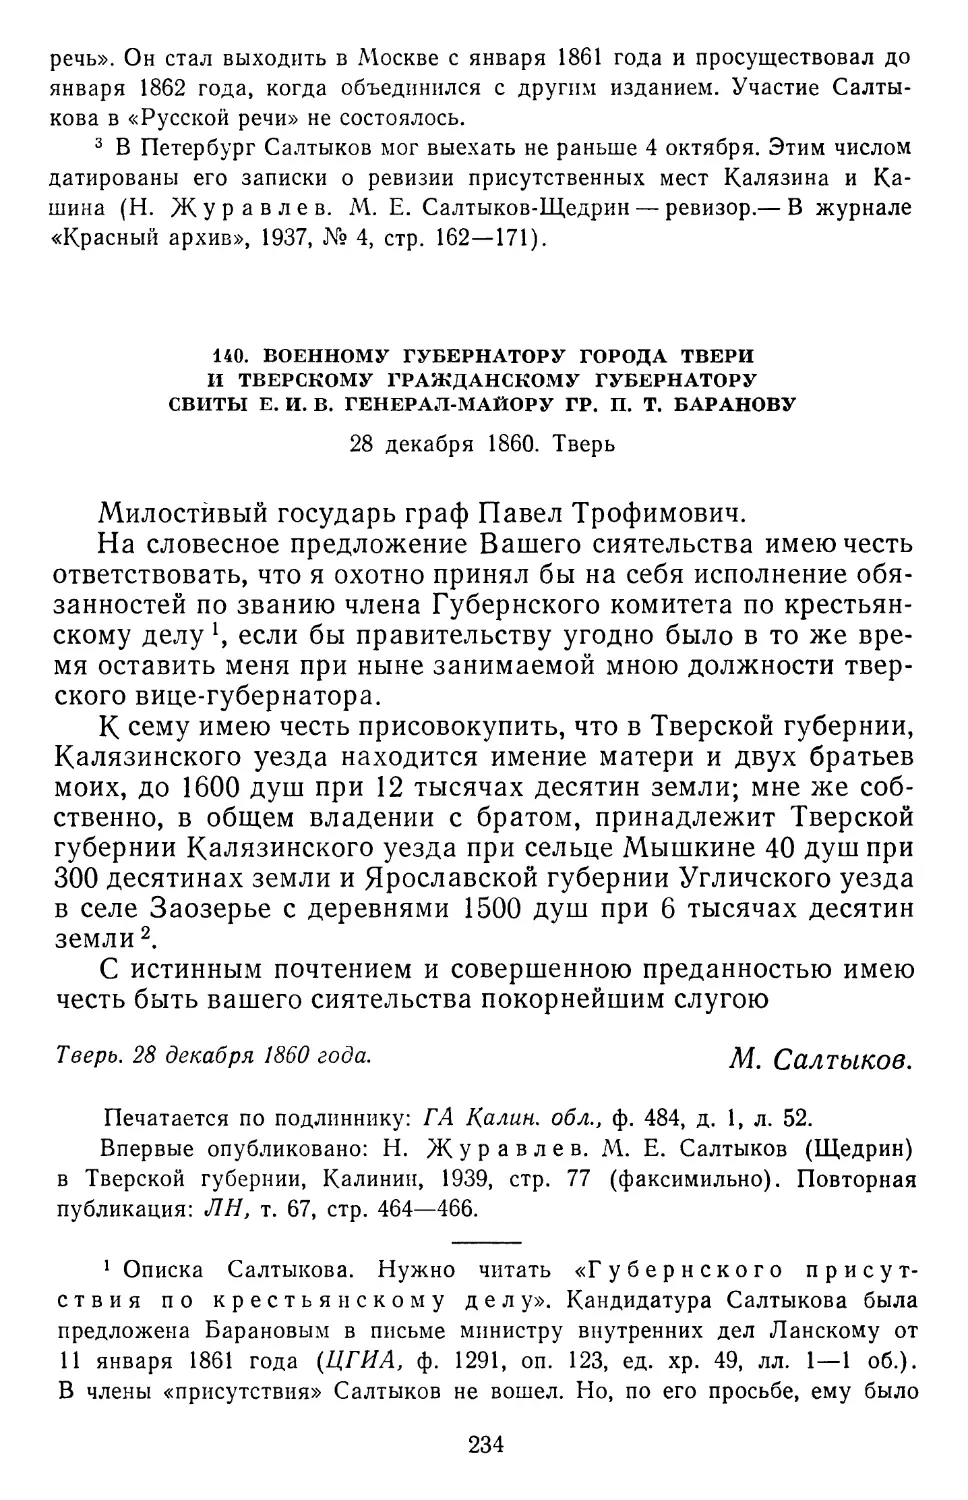 140.П.Т.Баранову. 28 декабря1860.Тверь